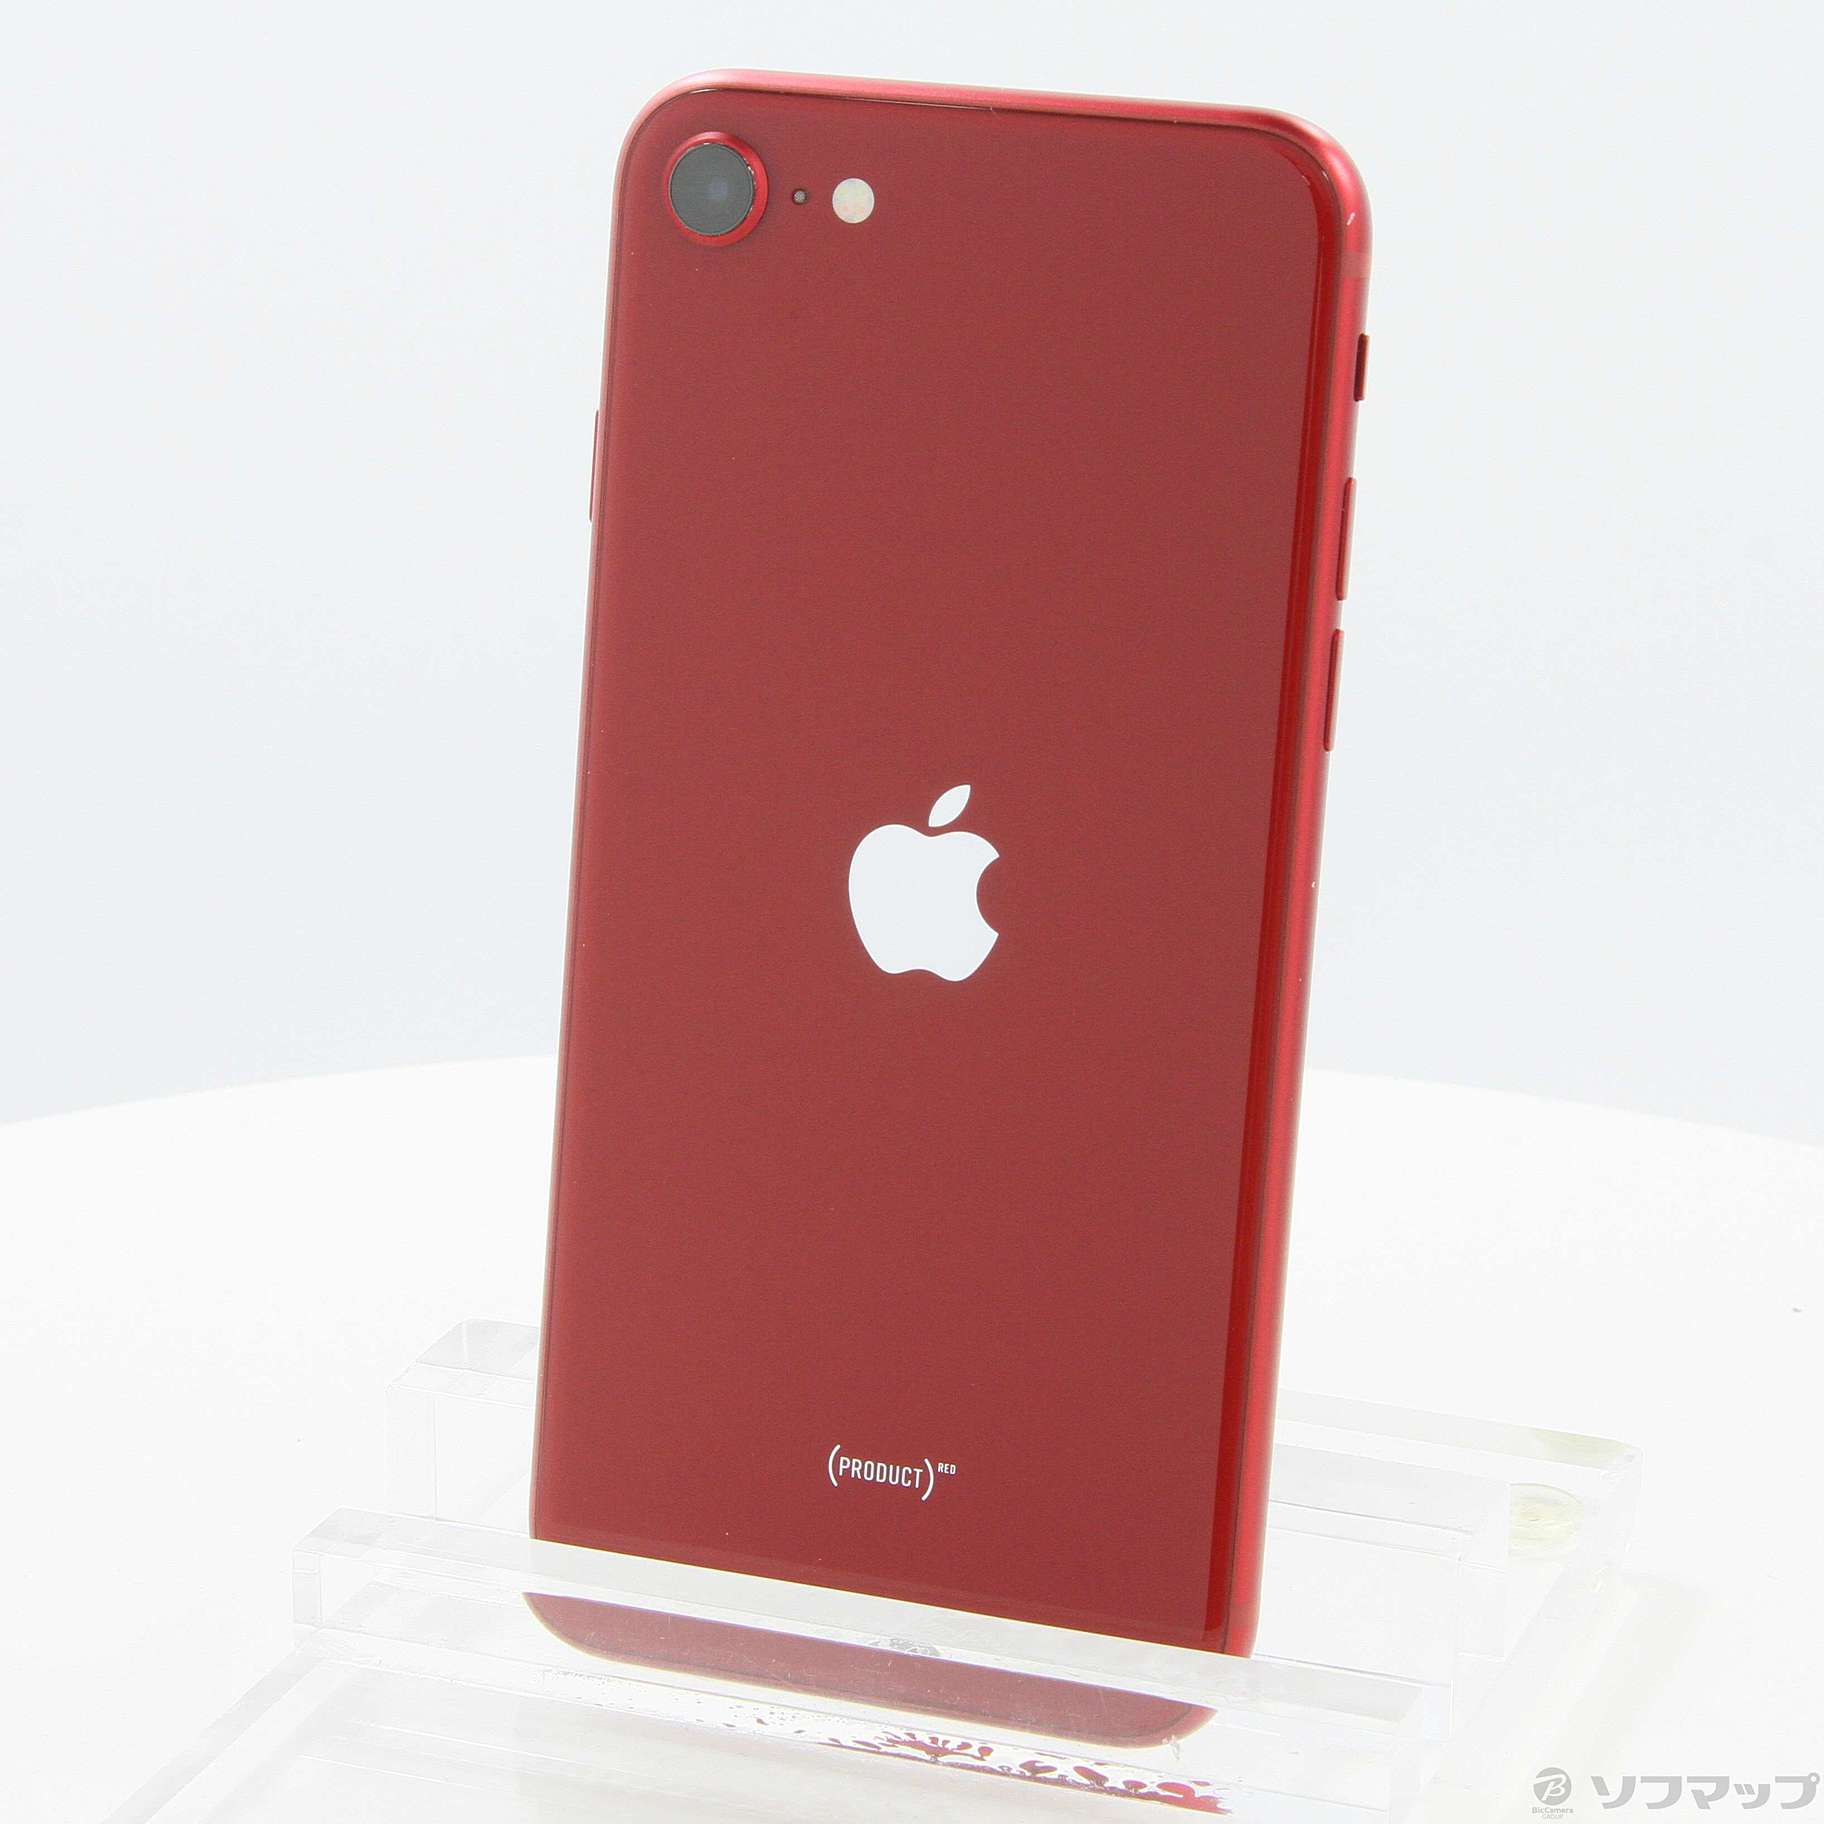 iPhone SE 第3世代 64GB REDバッテリー残量86% - スマートフォン本体